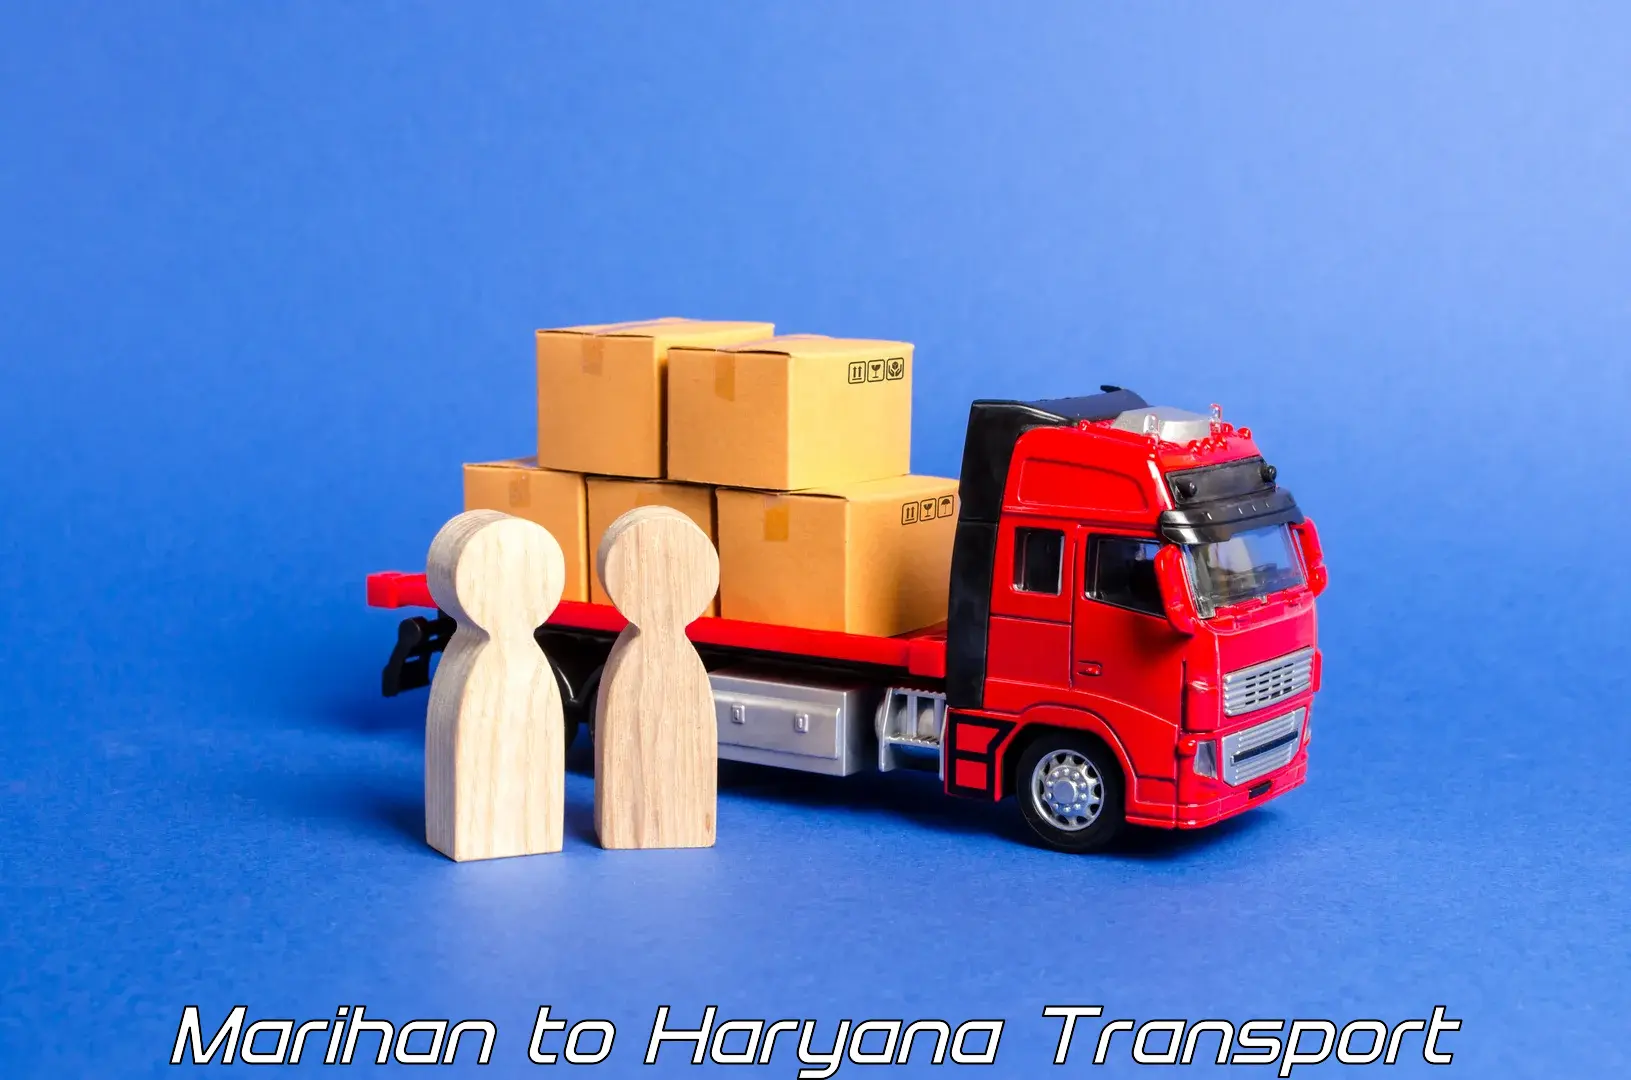 Commercial transport service Marihan to Guhla